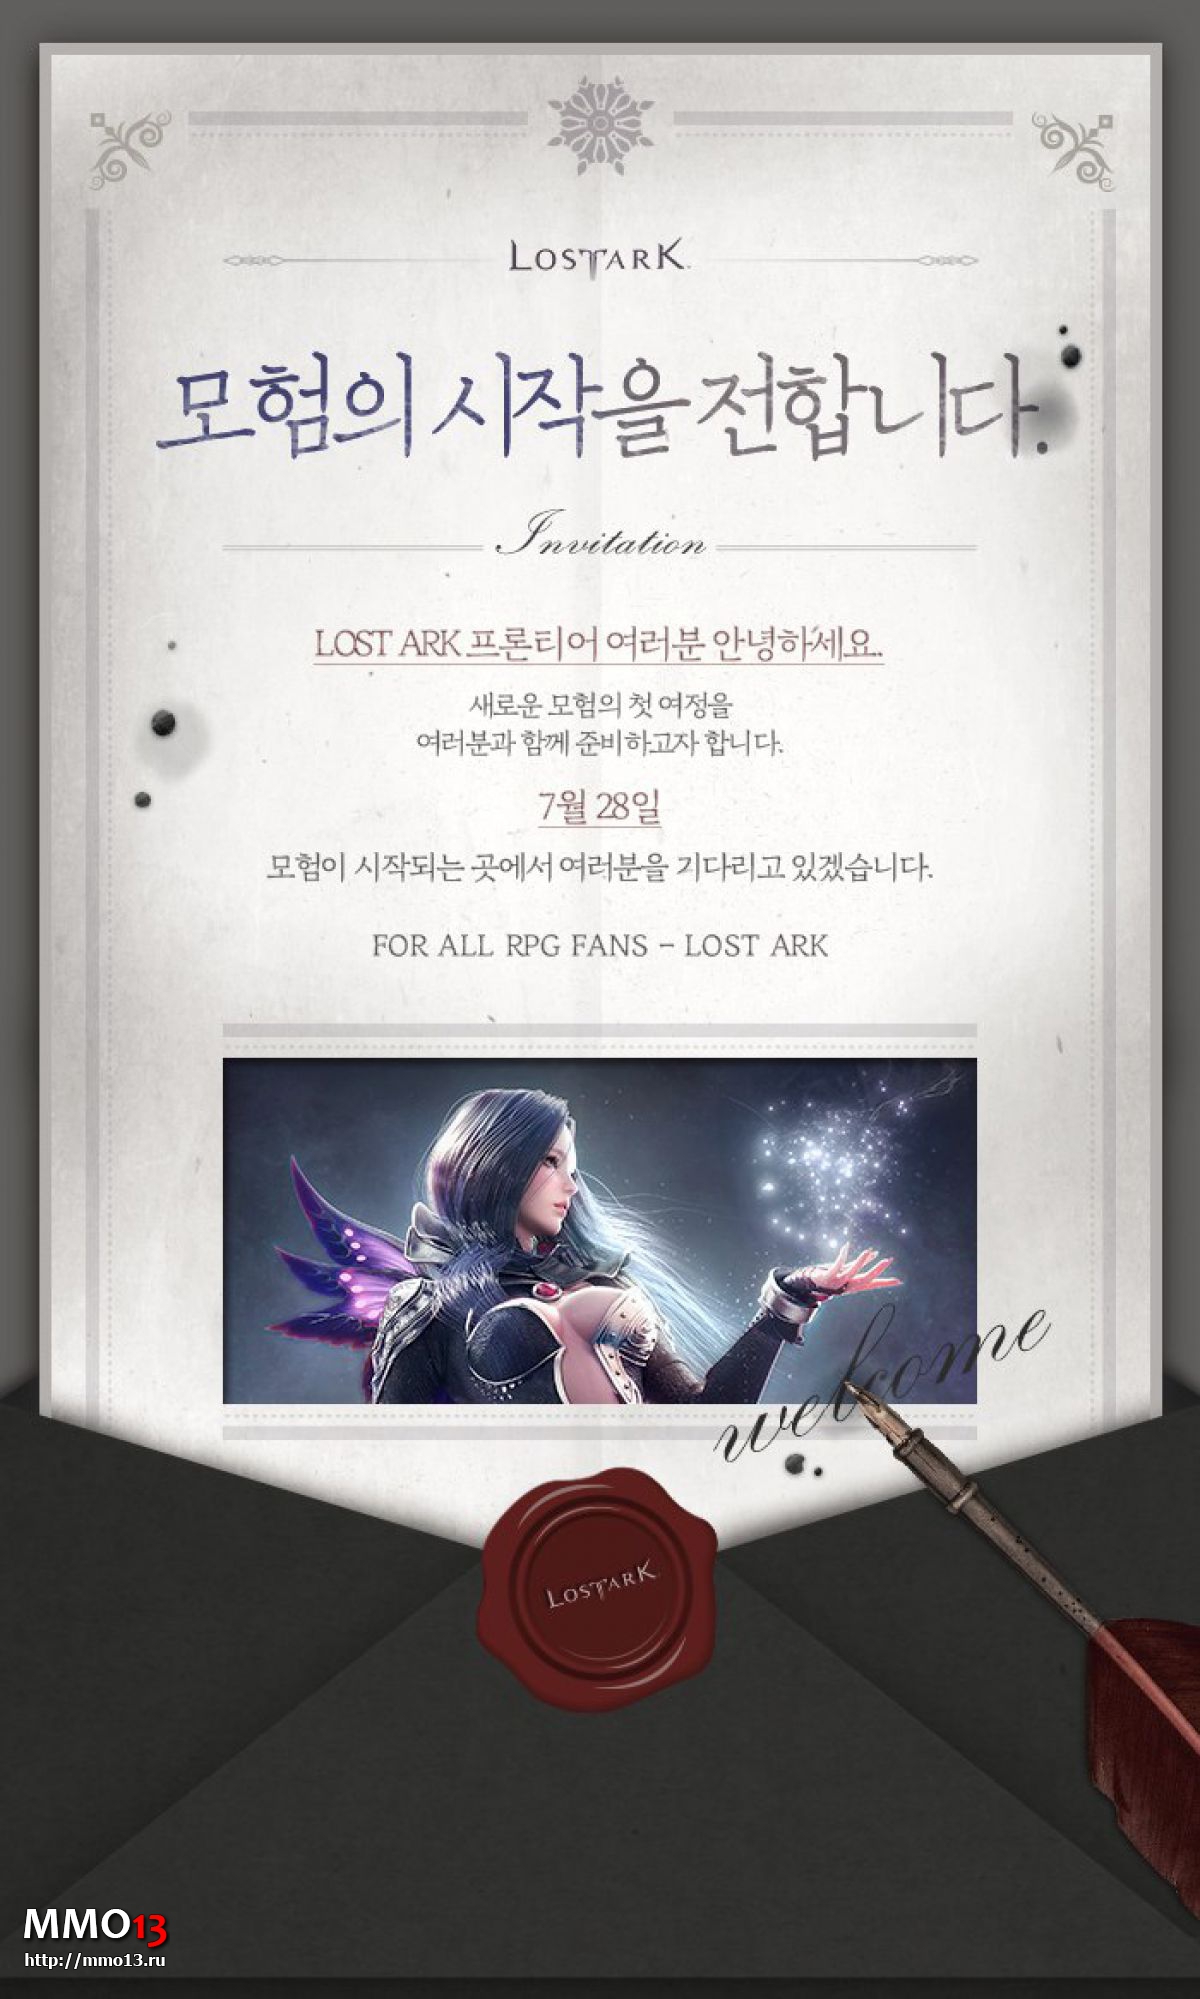 Официальный корейский сайт Lost Ark откроется 28 июля — ЗБТ грядет!